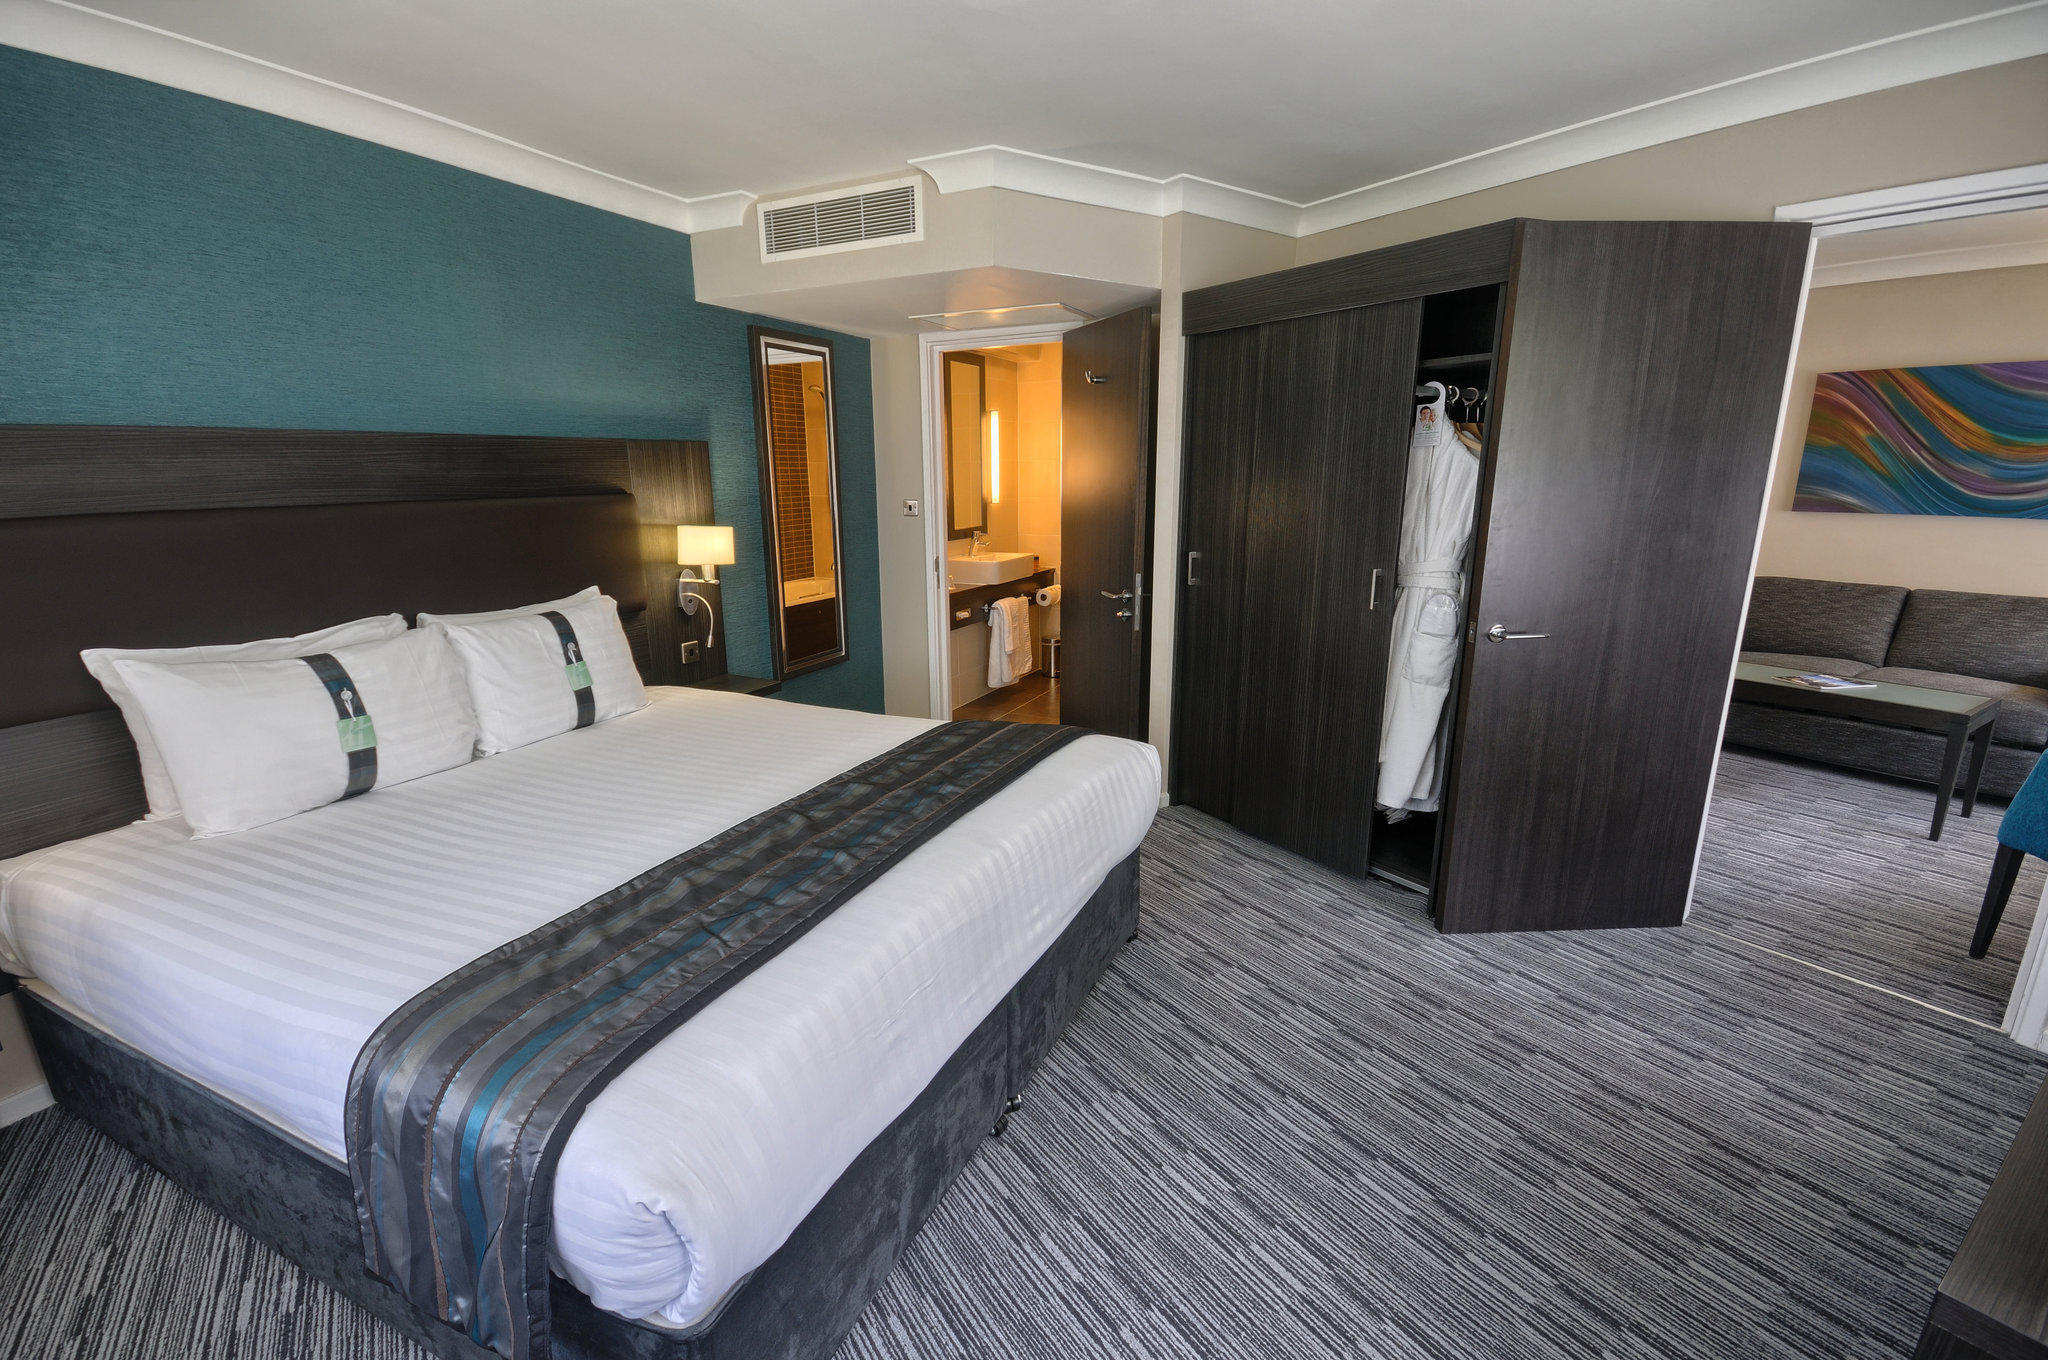 Holiday Inn London Gatwick - Worth, an IHG Hotel Crawley 01293 884806